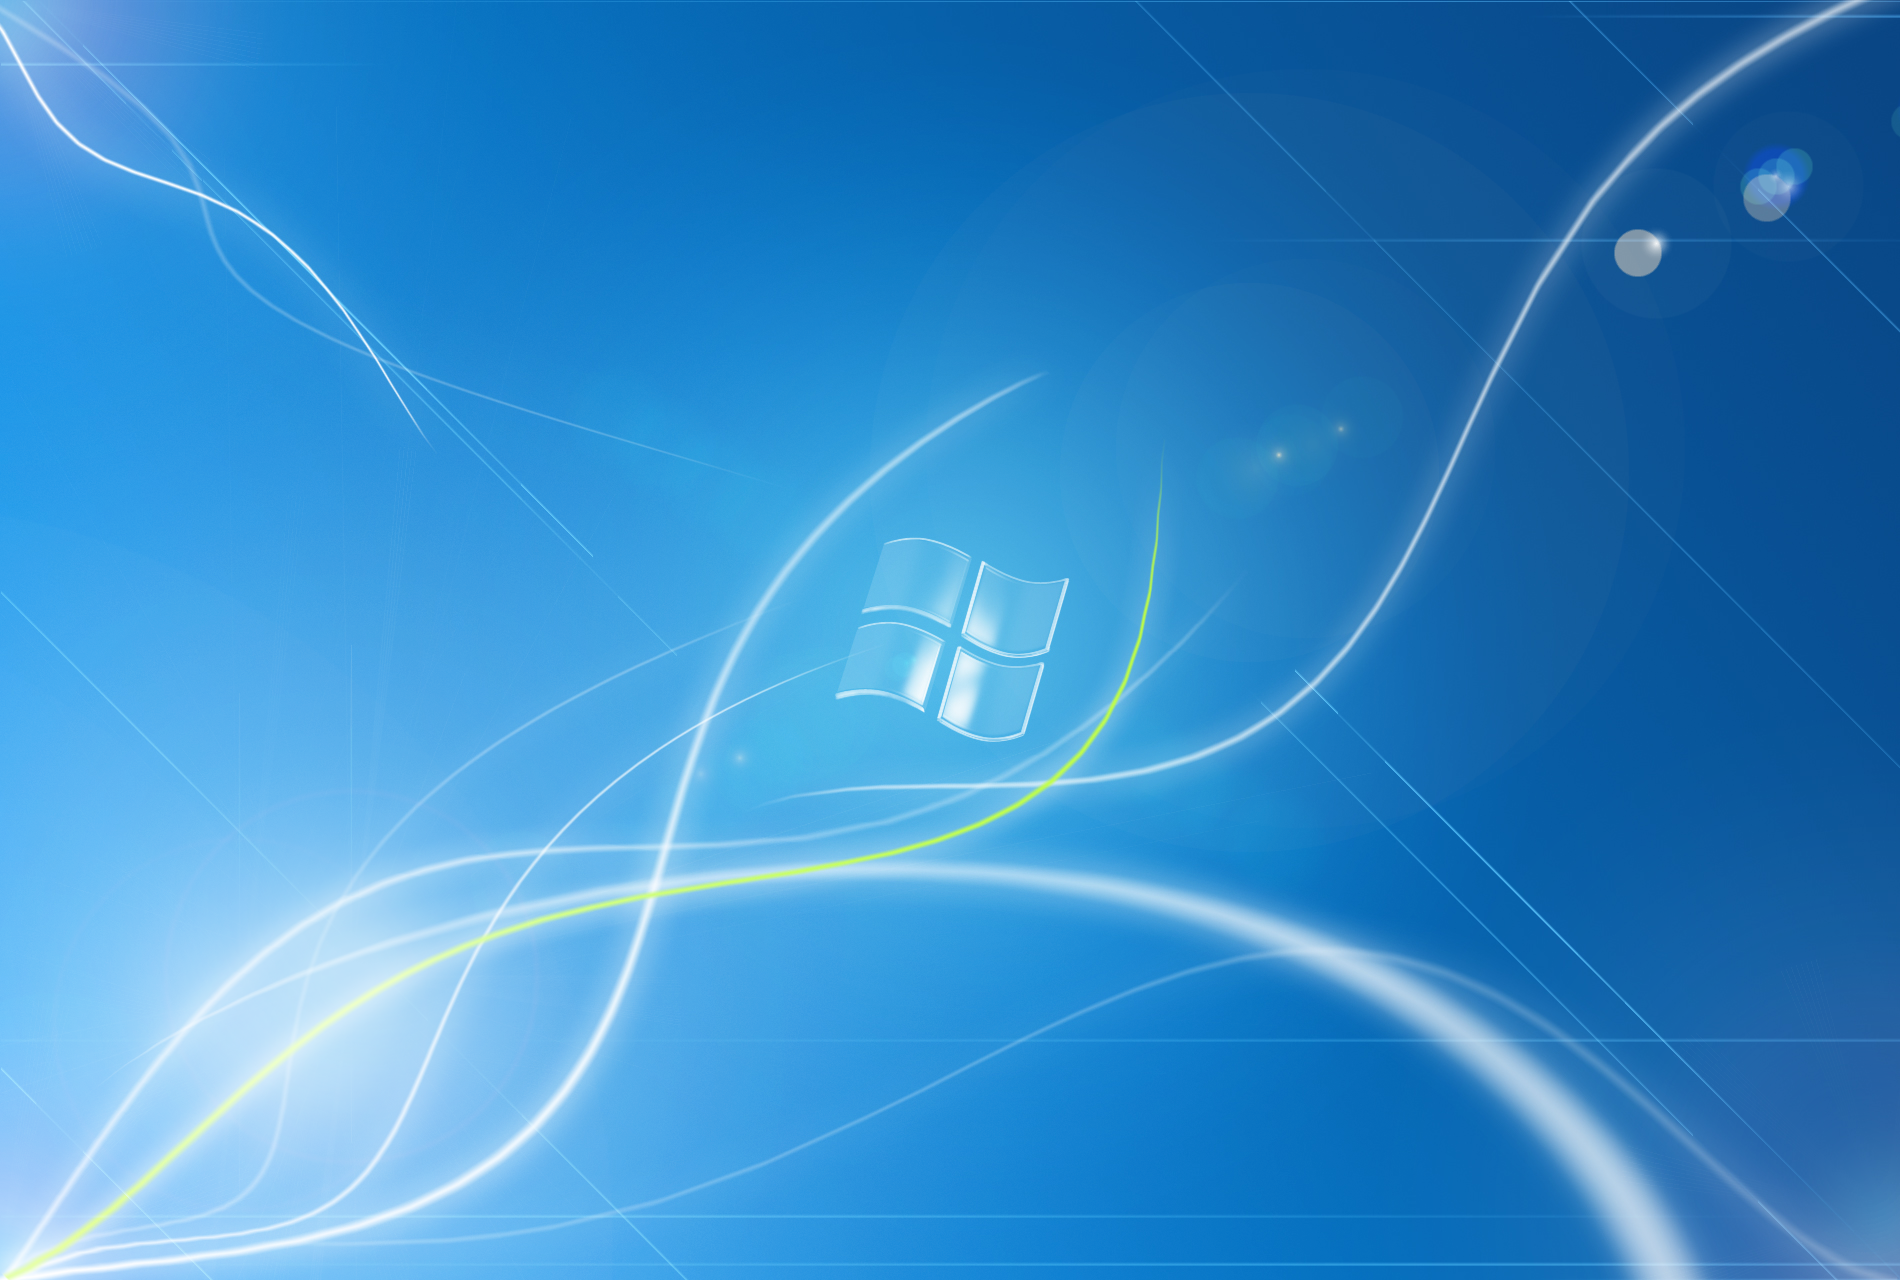 Windows 7 Papel De Parede And Planos De Fundo 1900x1280 Id